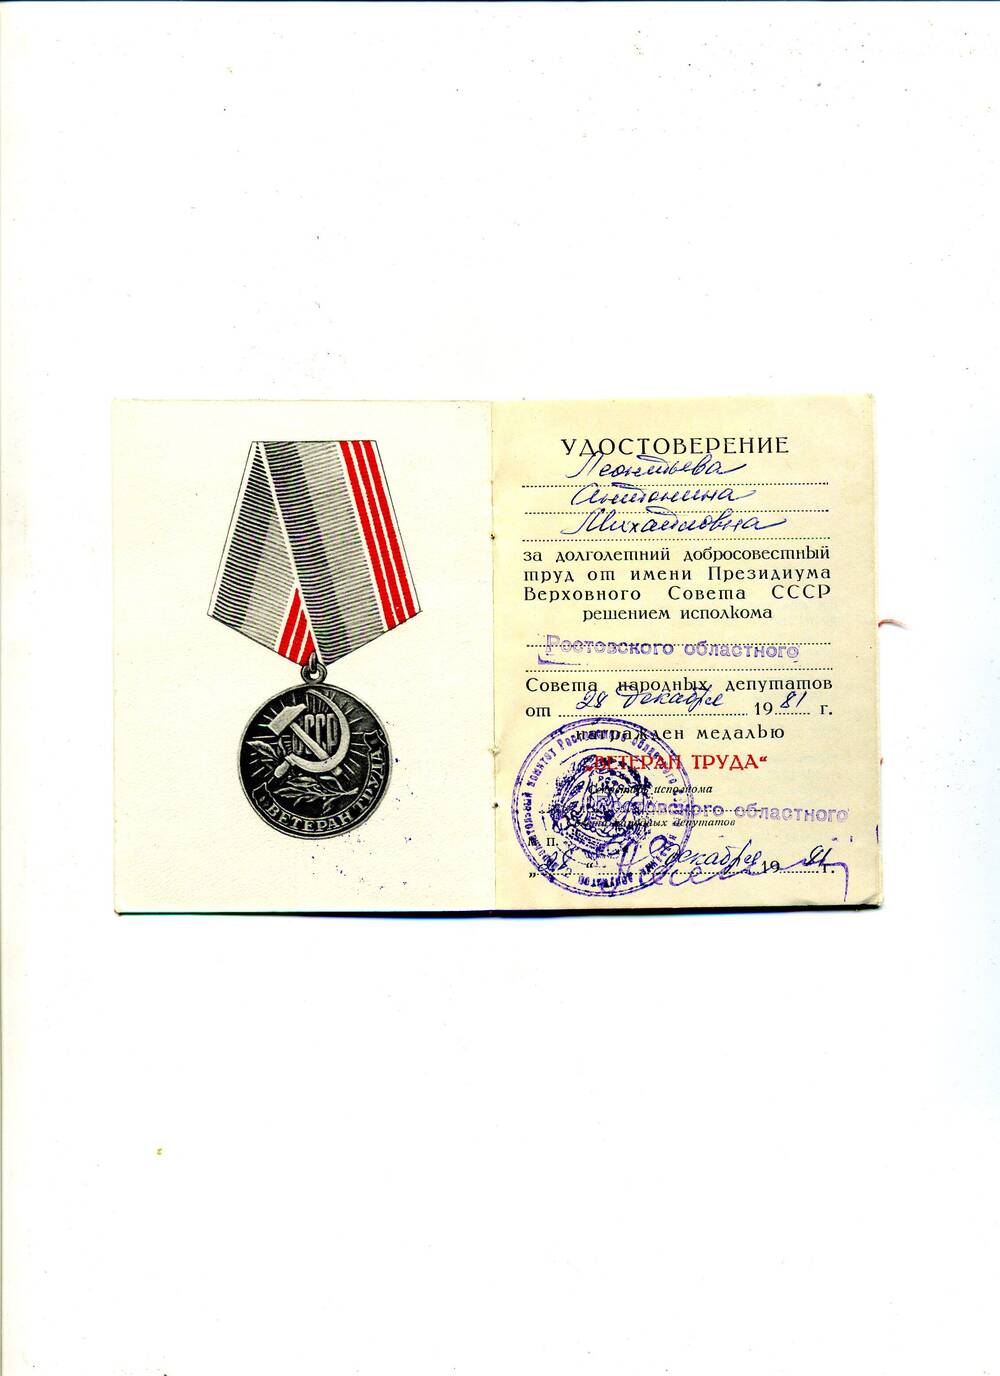 Удостоверения к медали Ветеран труда Леонтьевой А.М., выданное 28 декабря 1981 г.